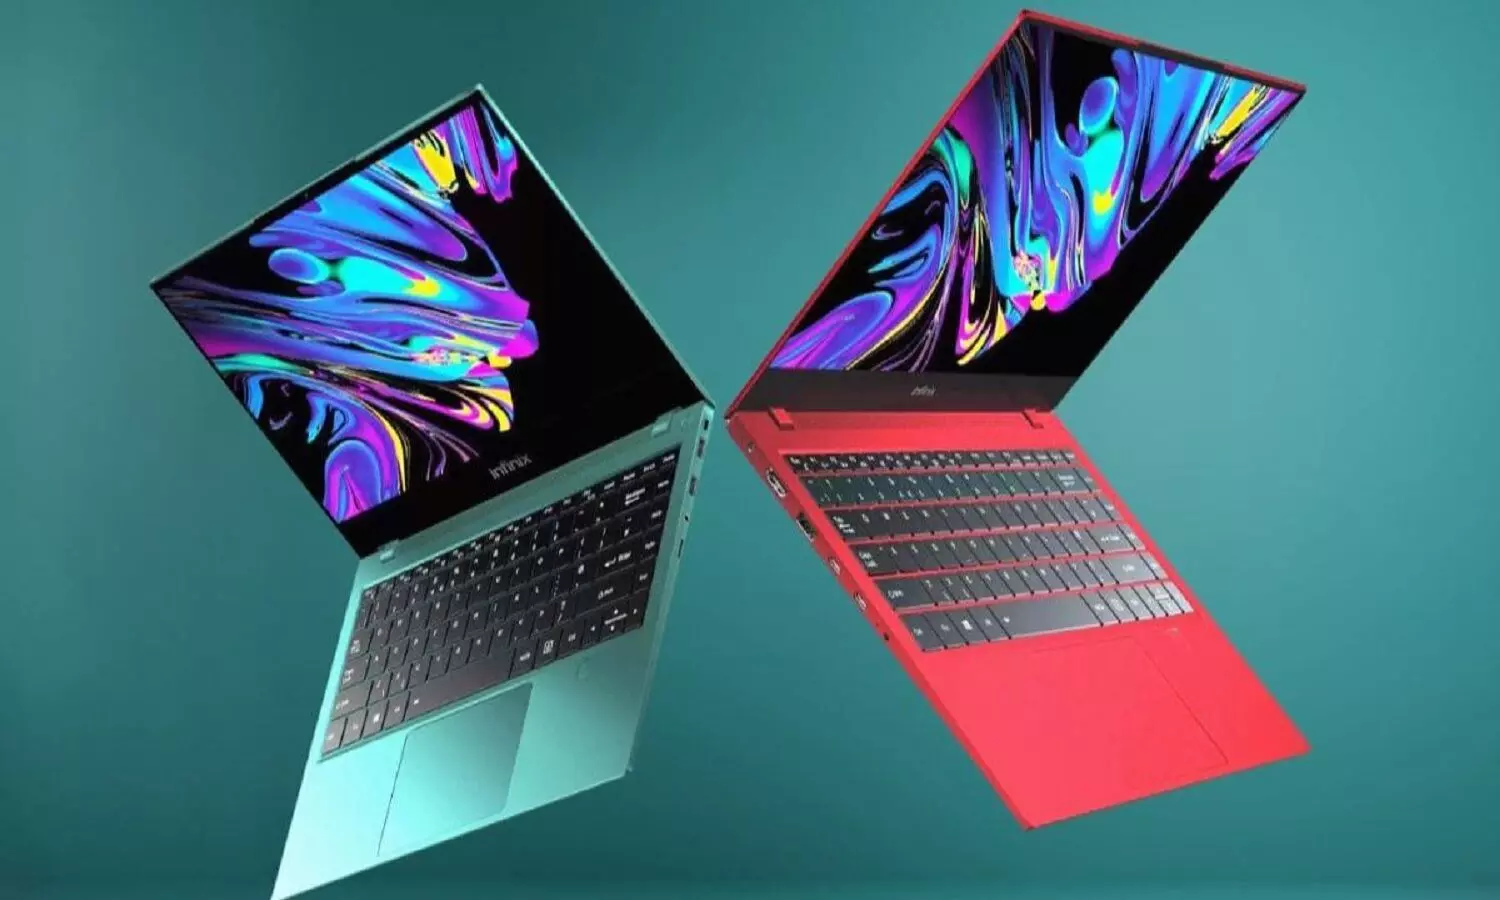 फ्लिपकार्ट पर 40 हजार के लैपटॉप को मात्र 9000 रूपए में खरीदने का मौका